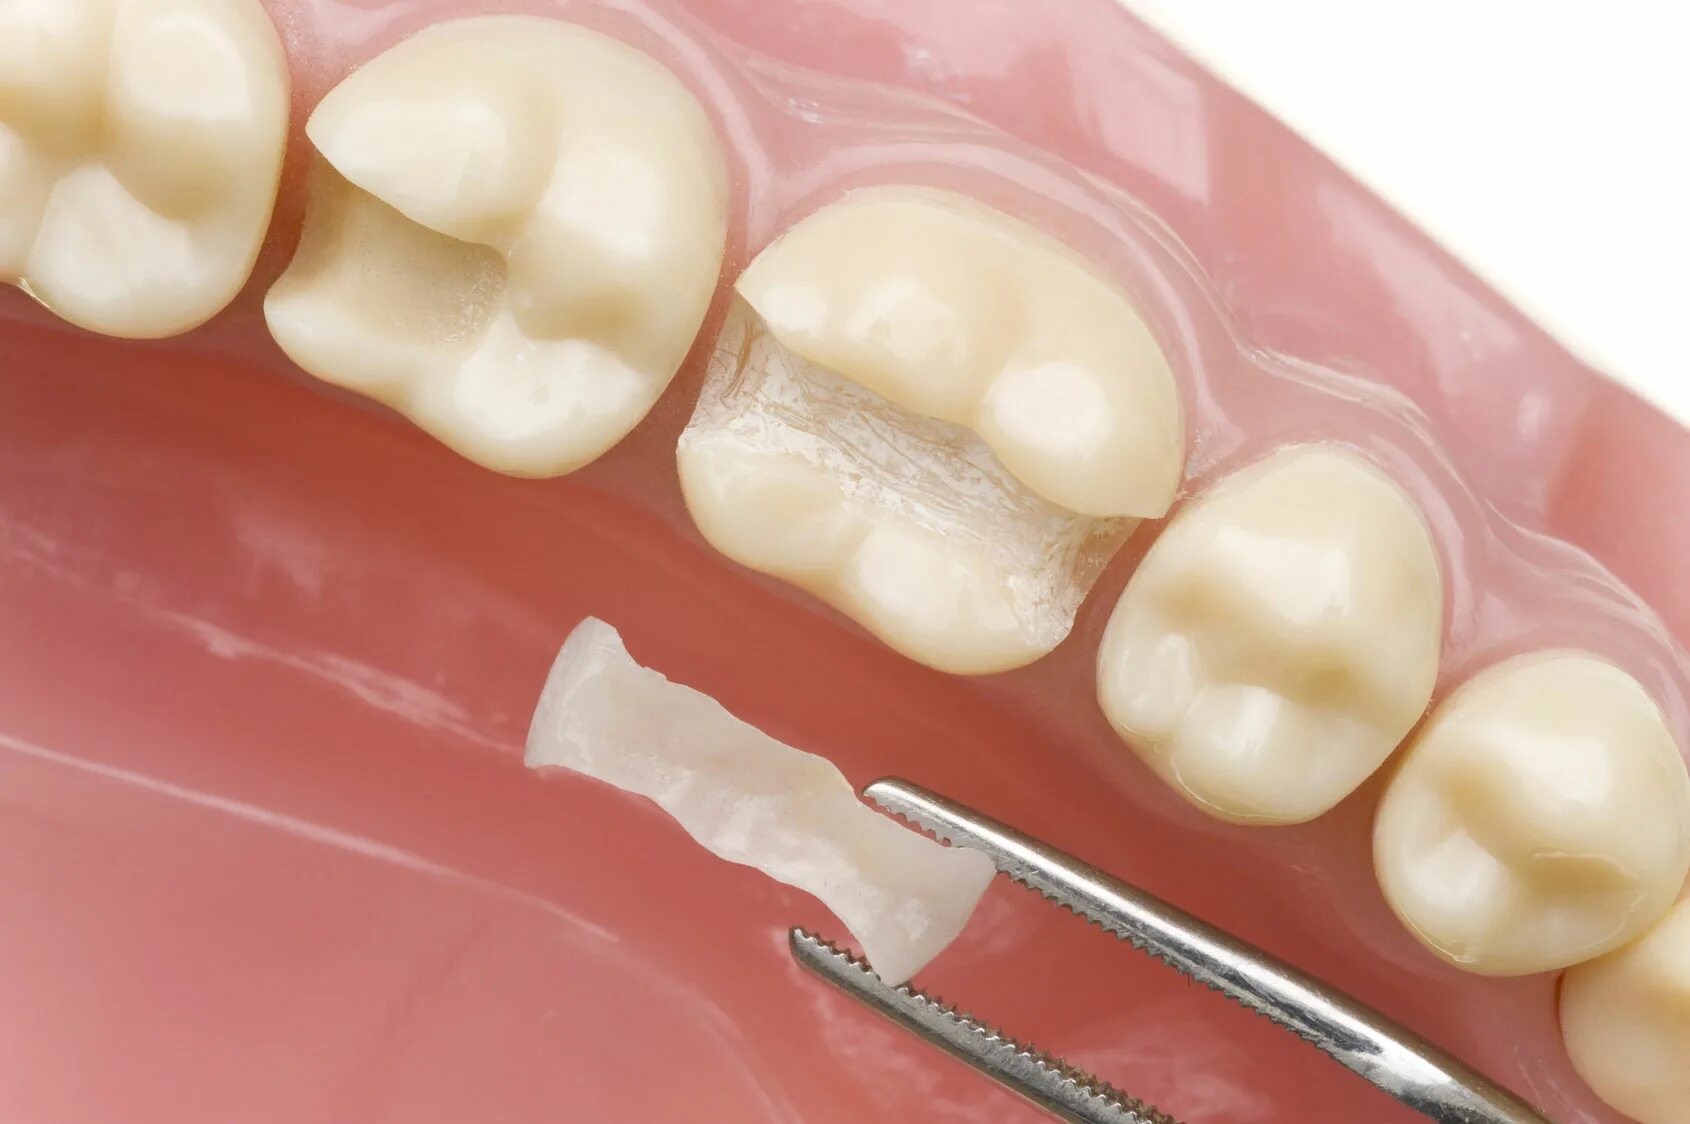 Микропротезы виниры вкладки стоматология. Микропротезы несъемные. Цельнокерамическая вкладка. Несъёмные мостовидные шинирующие протезы.